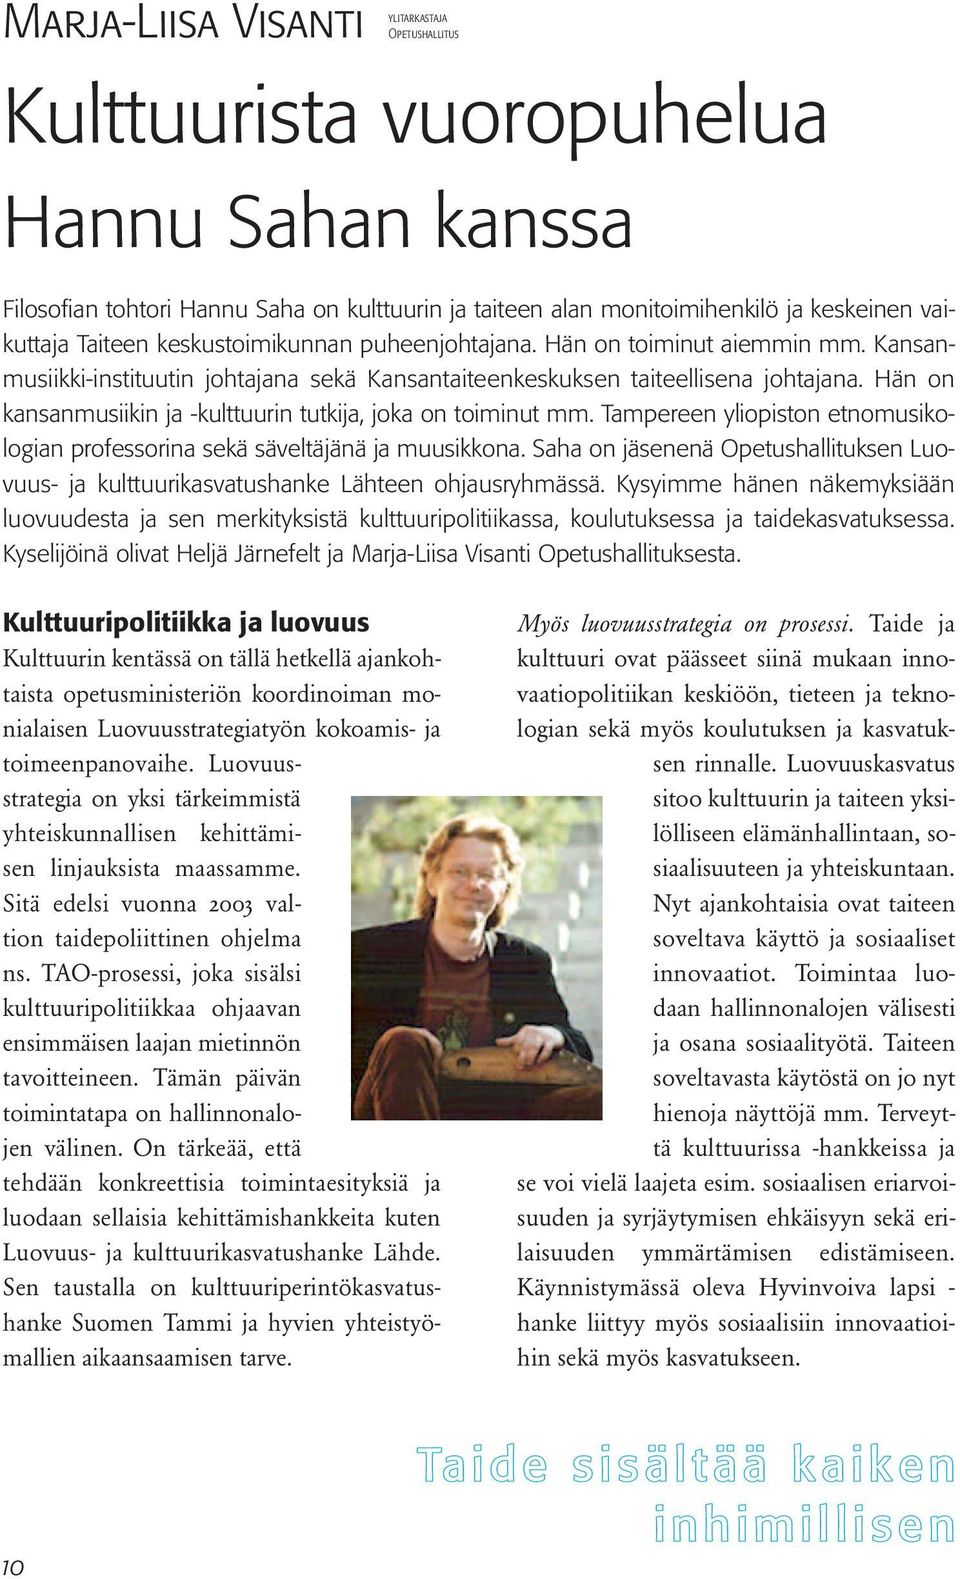 Hän on kansanmusiikin ja -kulttuurin tutkija, joka on toiminut mm. Tampereen yliopiston etnomusikologian professorina sekä säveltäjänä ja muusikkona.